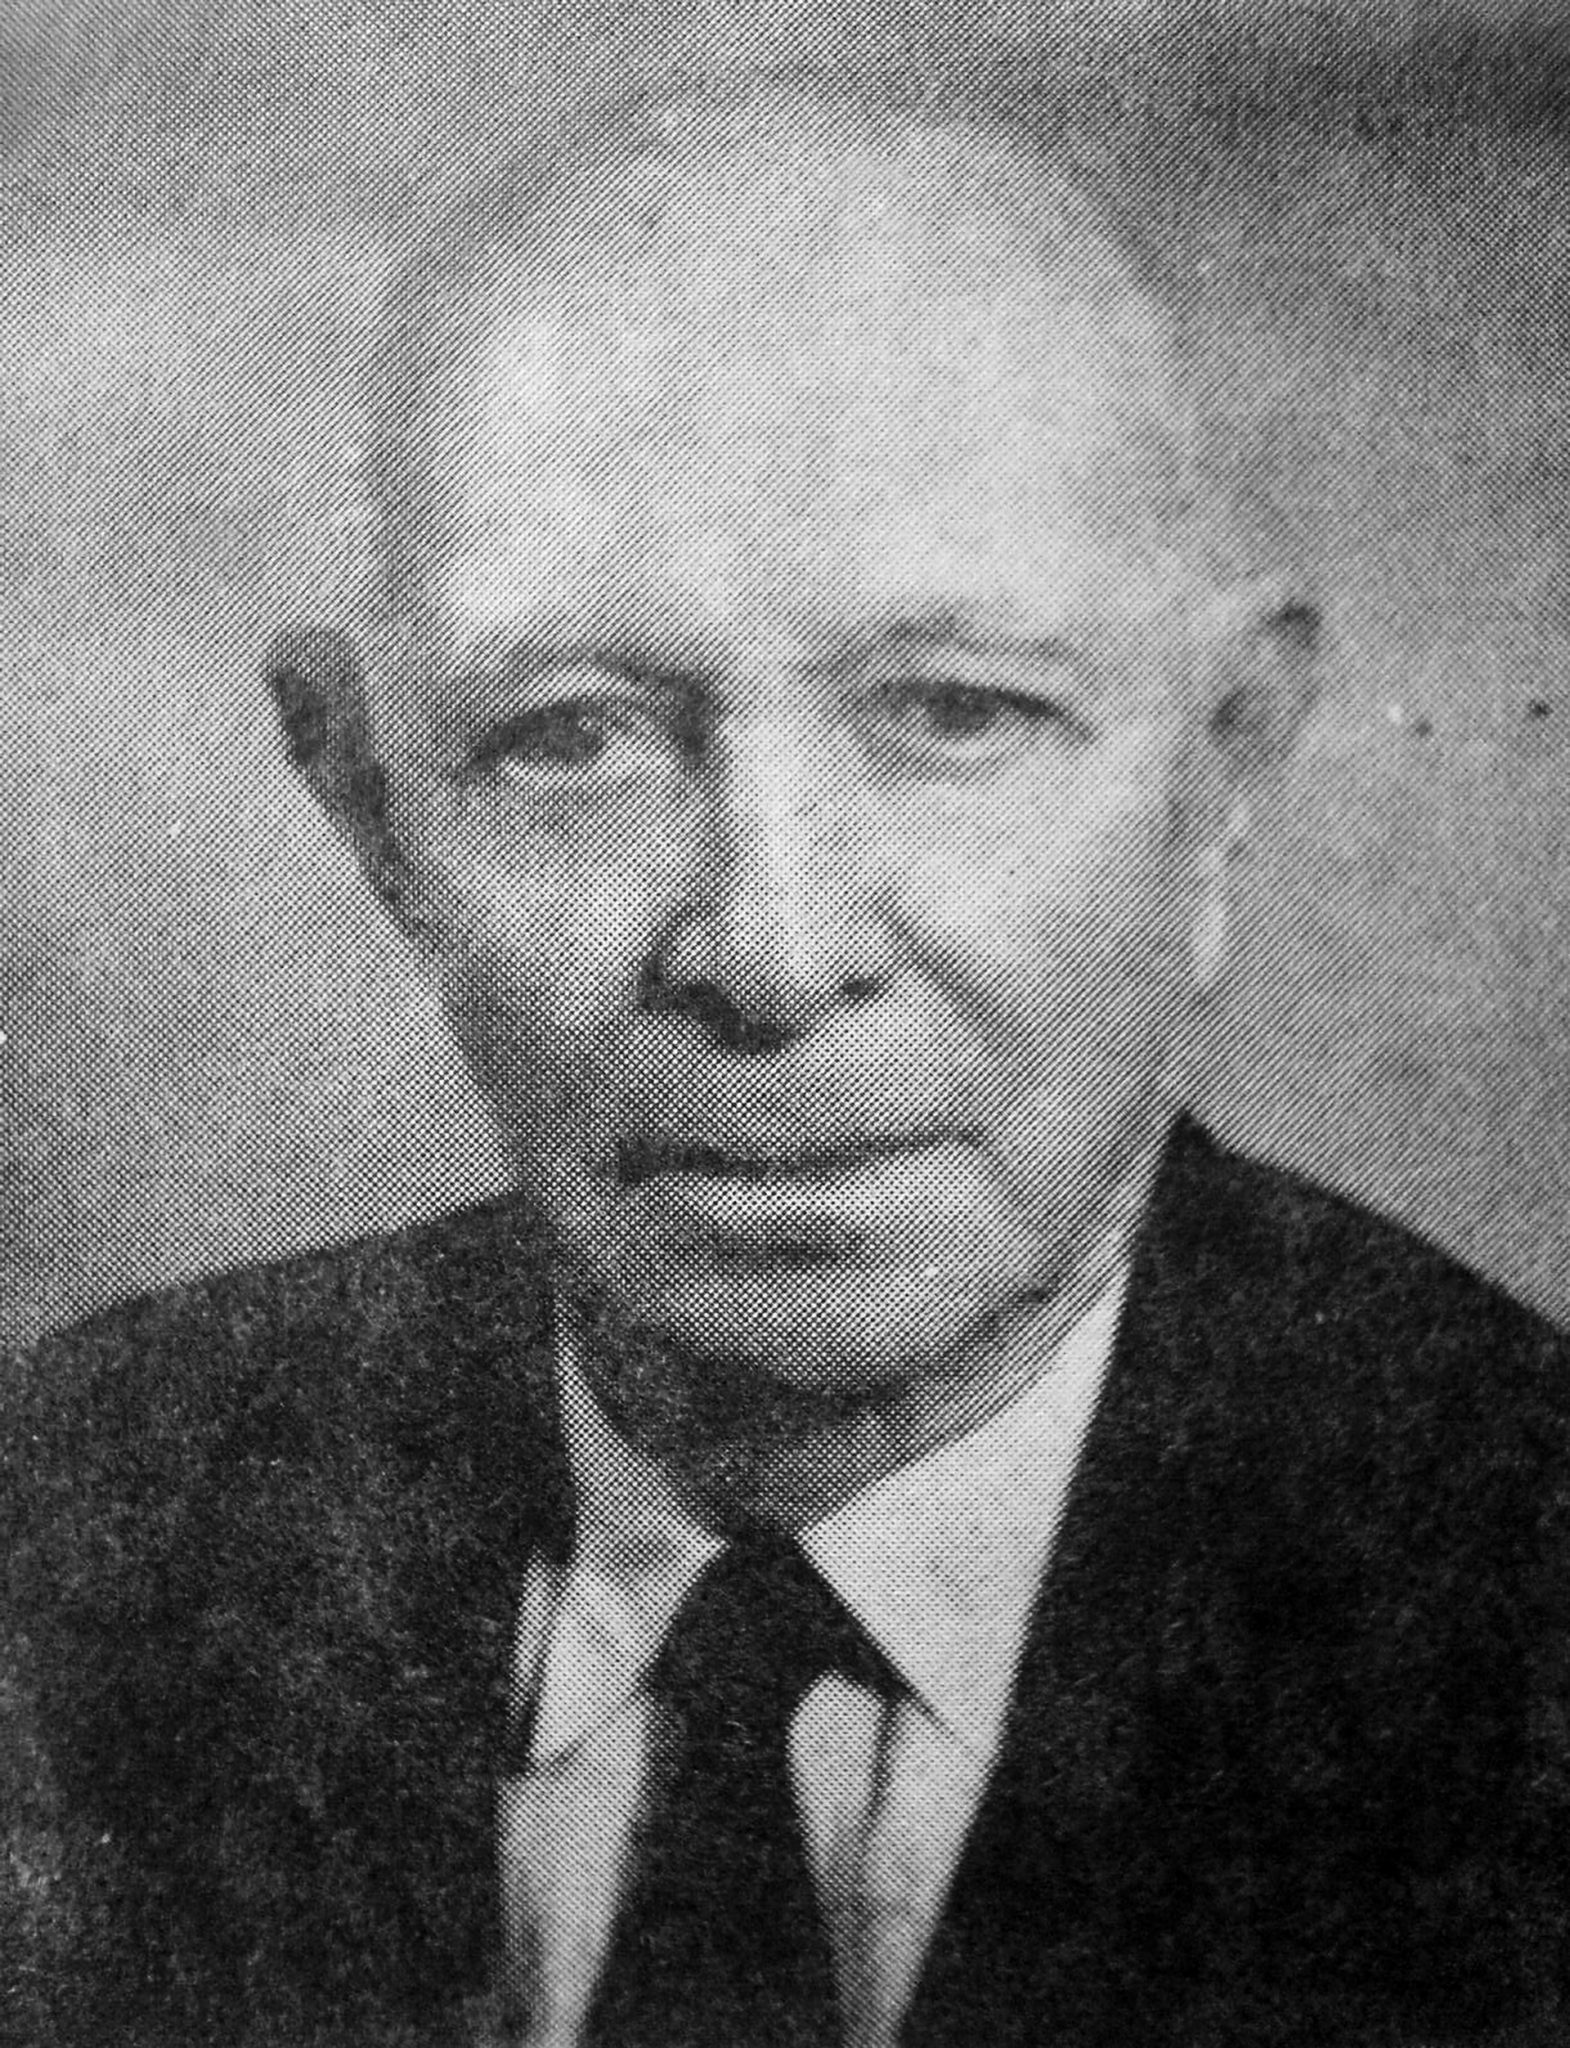 Juancito Rodríguez